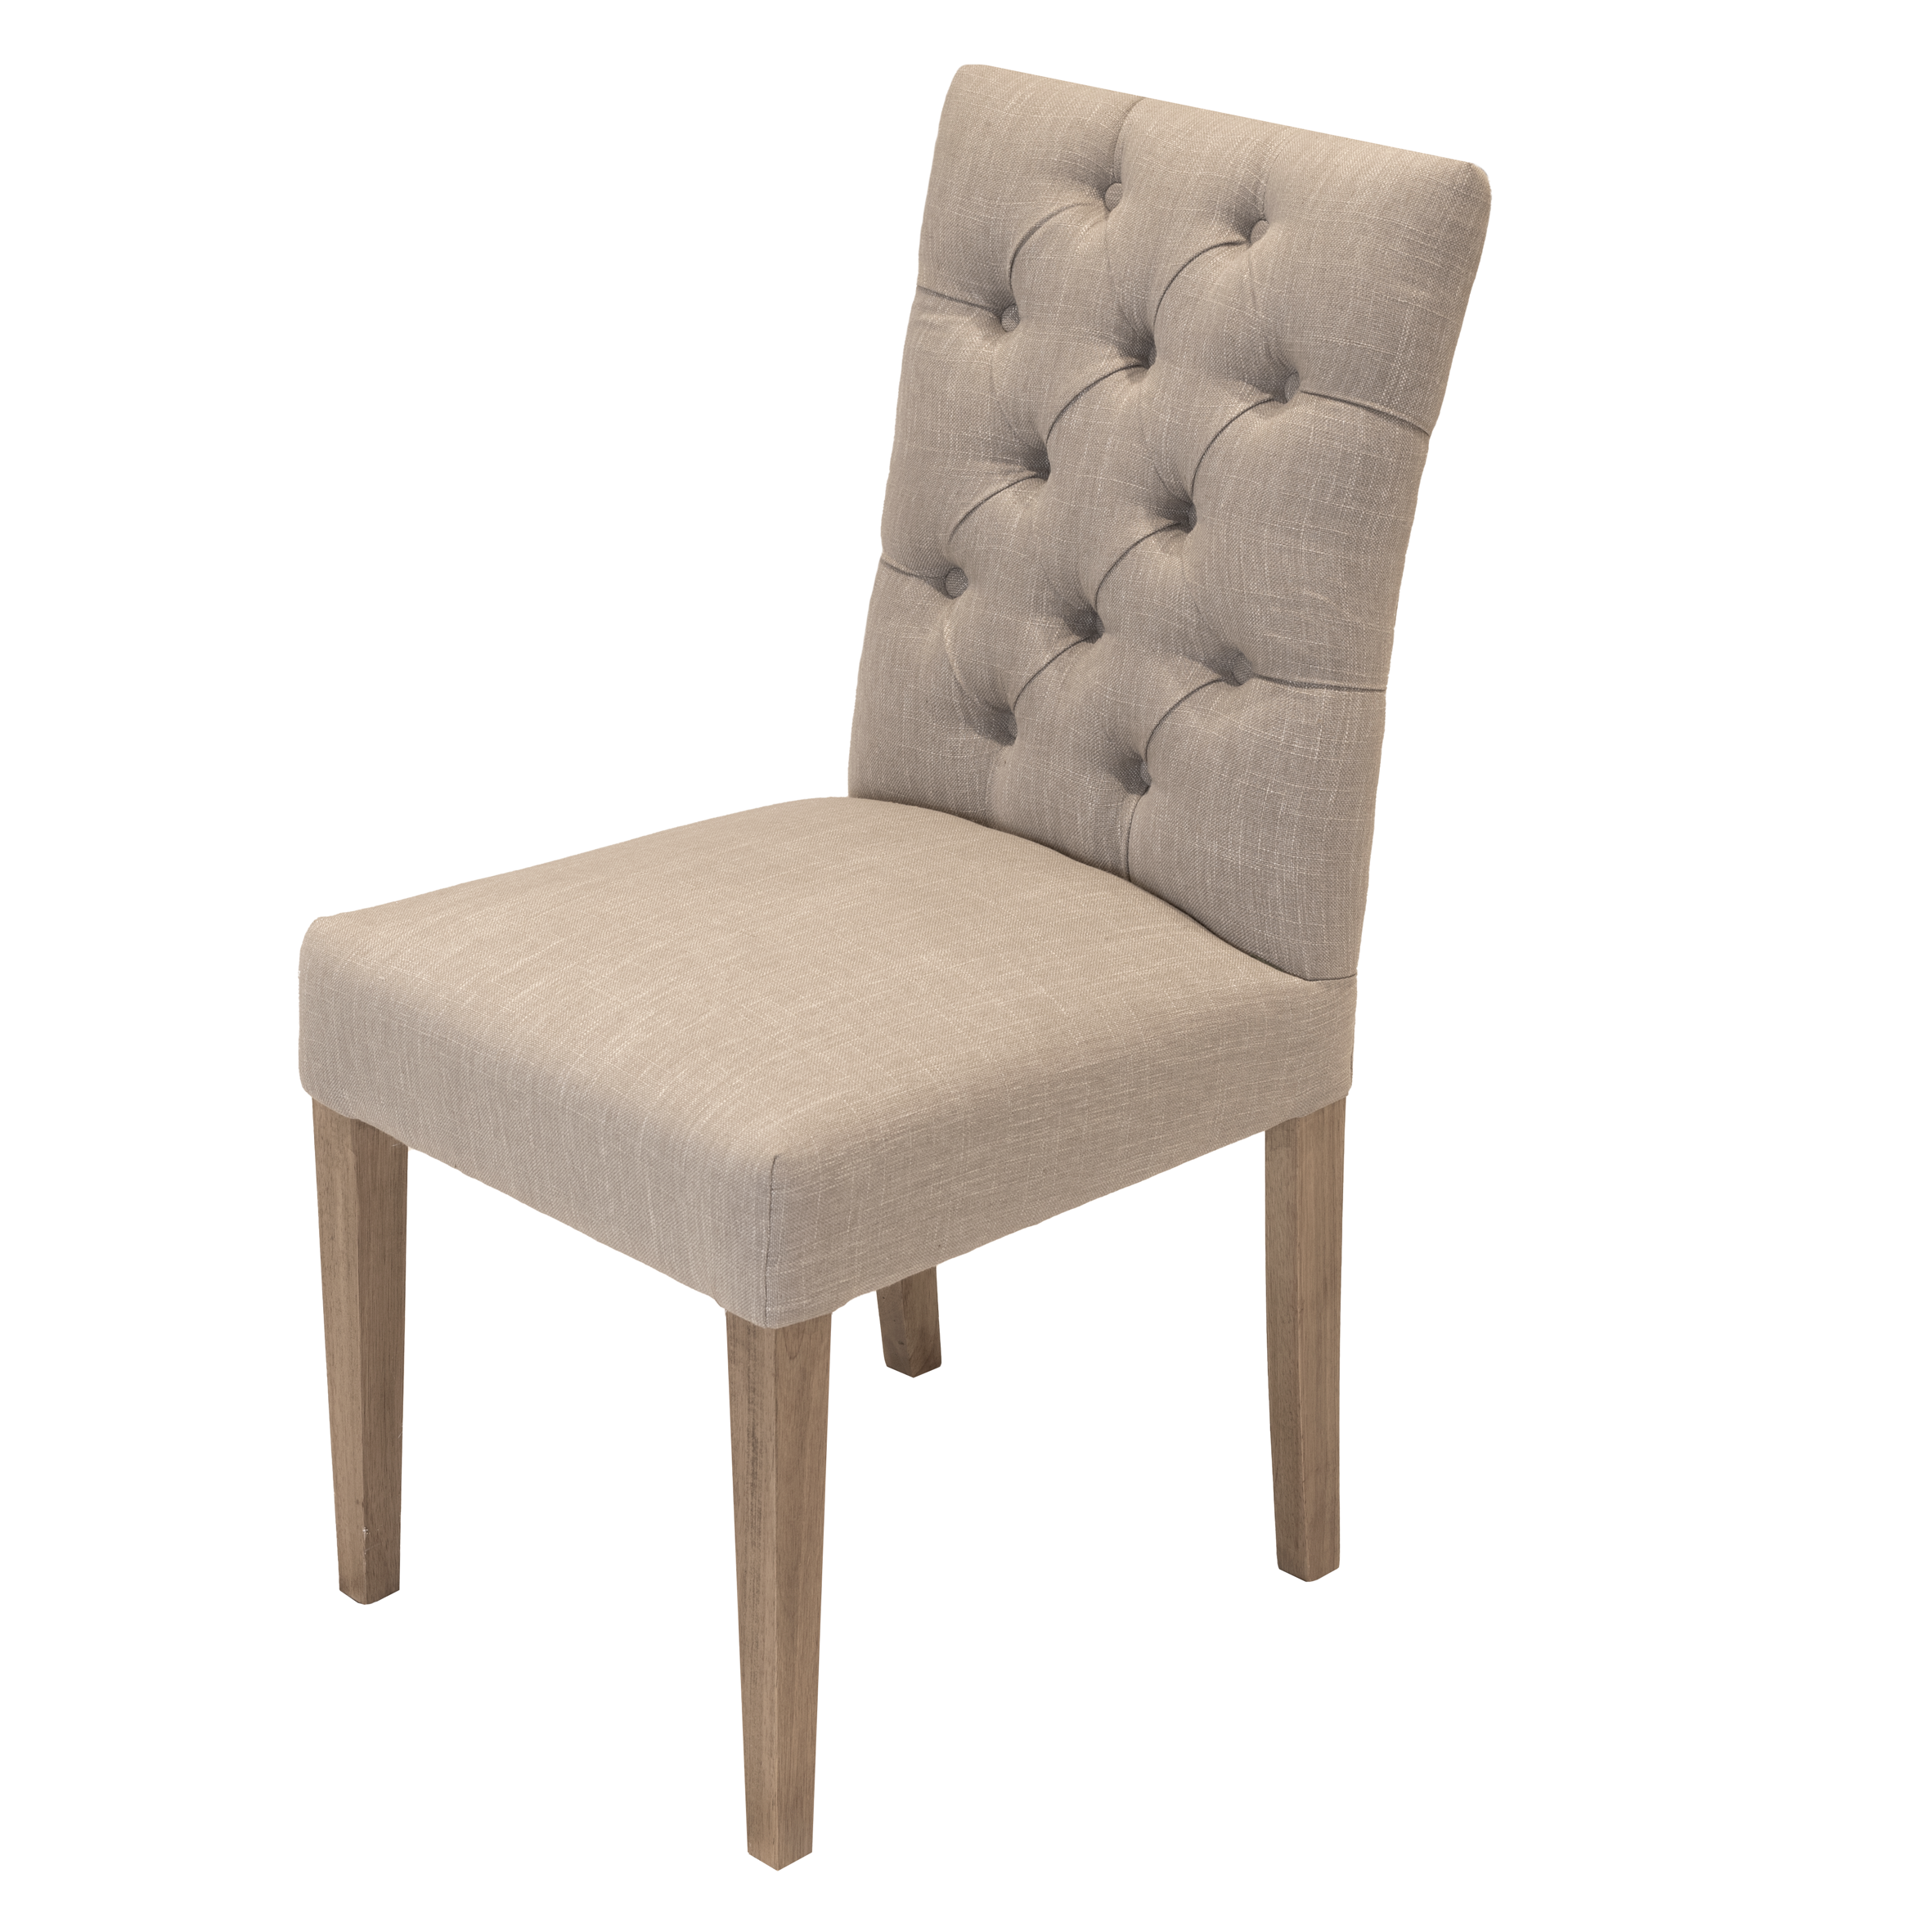 Santino Flaxen Chair